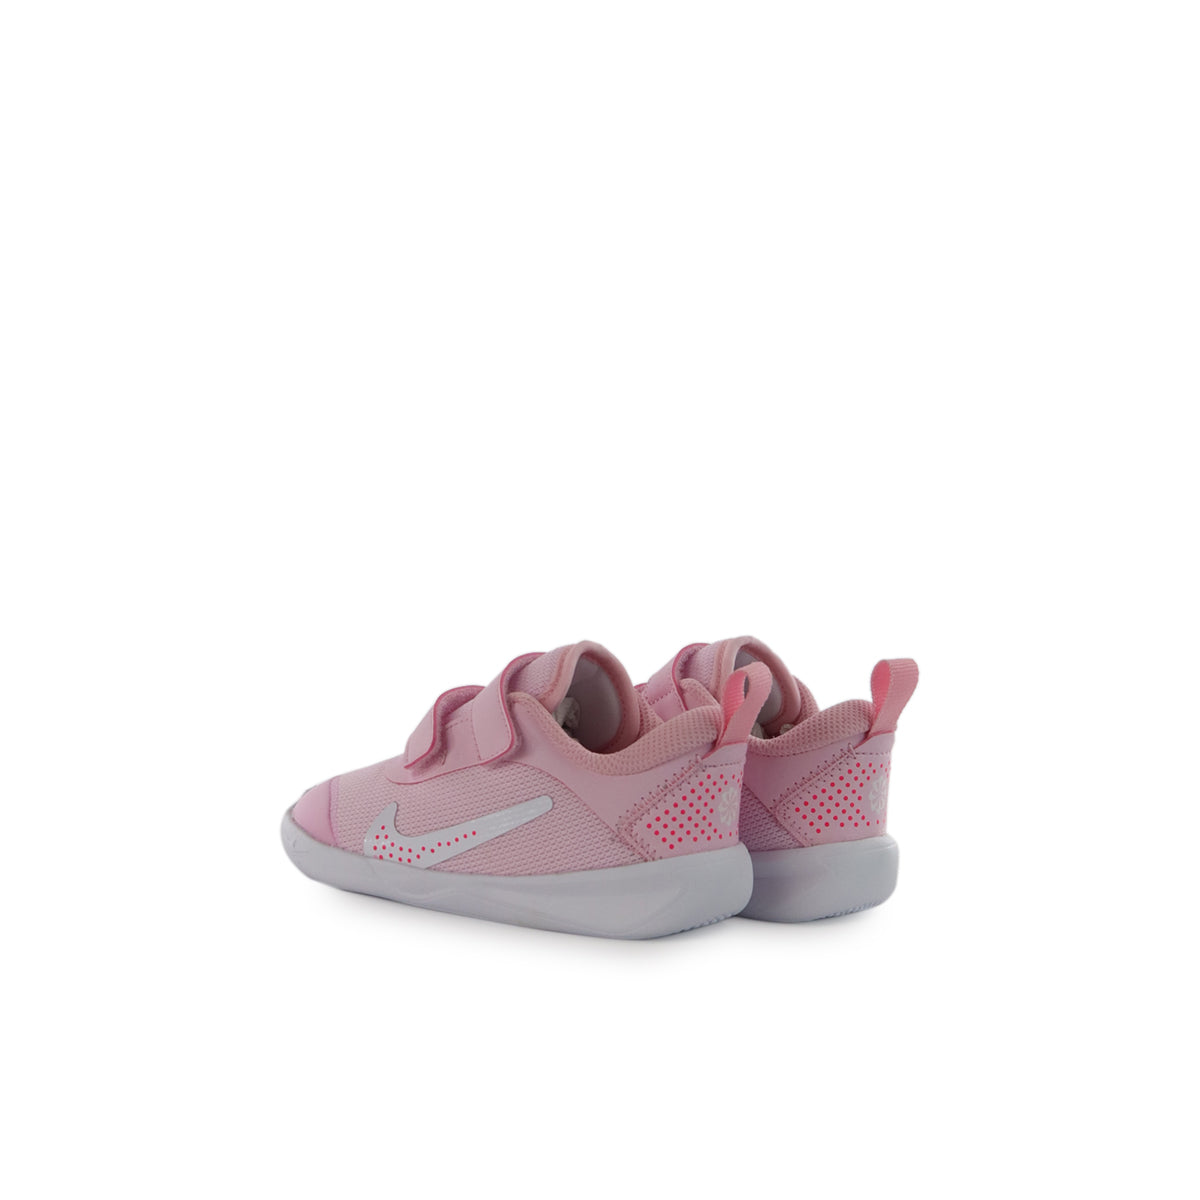 Fashion x Footwear – DM9028-600 Nike Brooklyn rosa-weiss - Multi-Court (TD) Omni